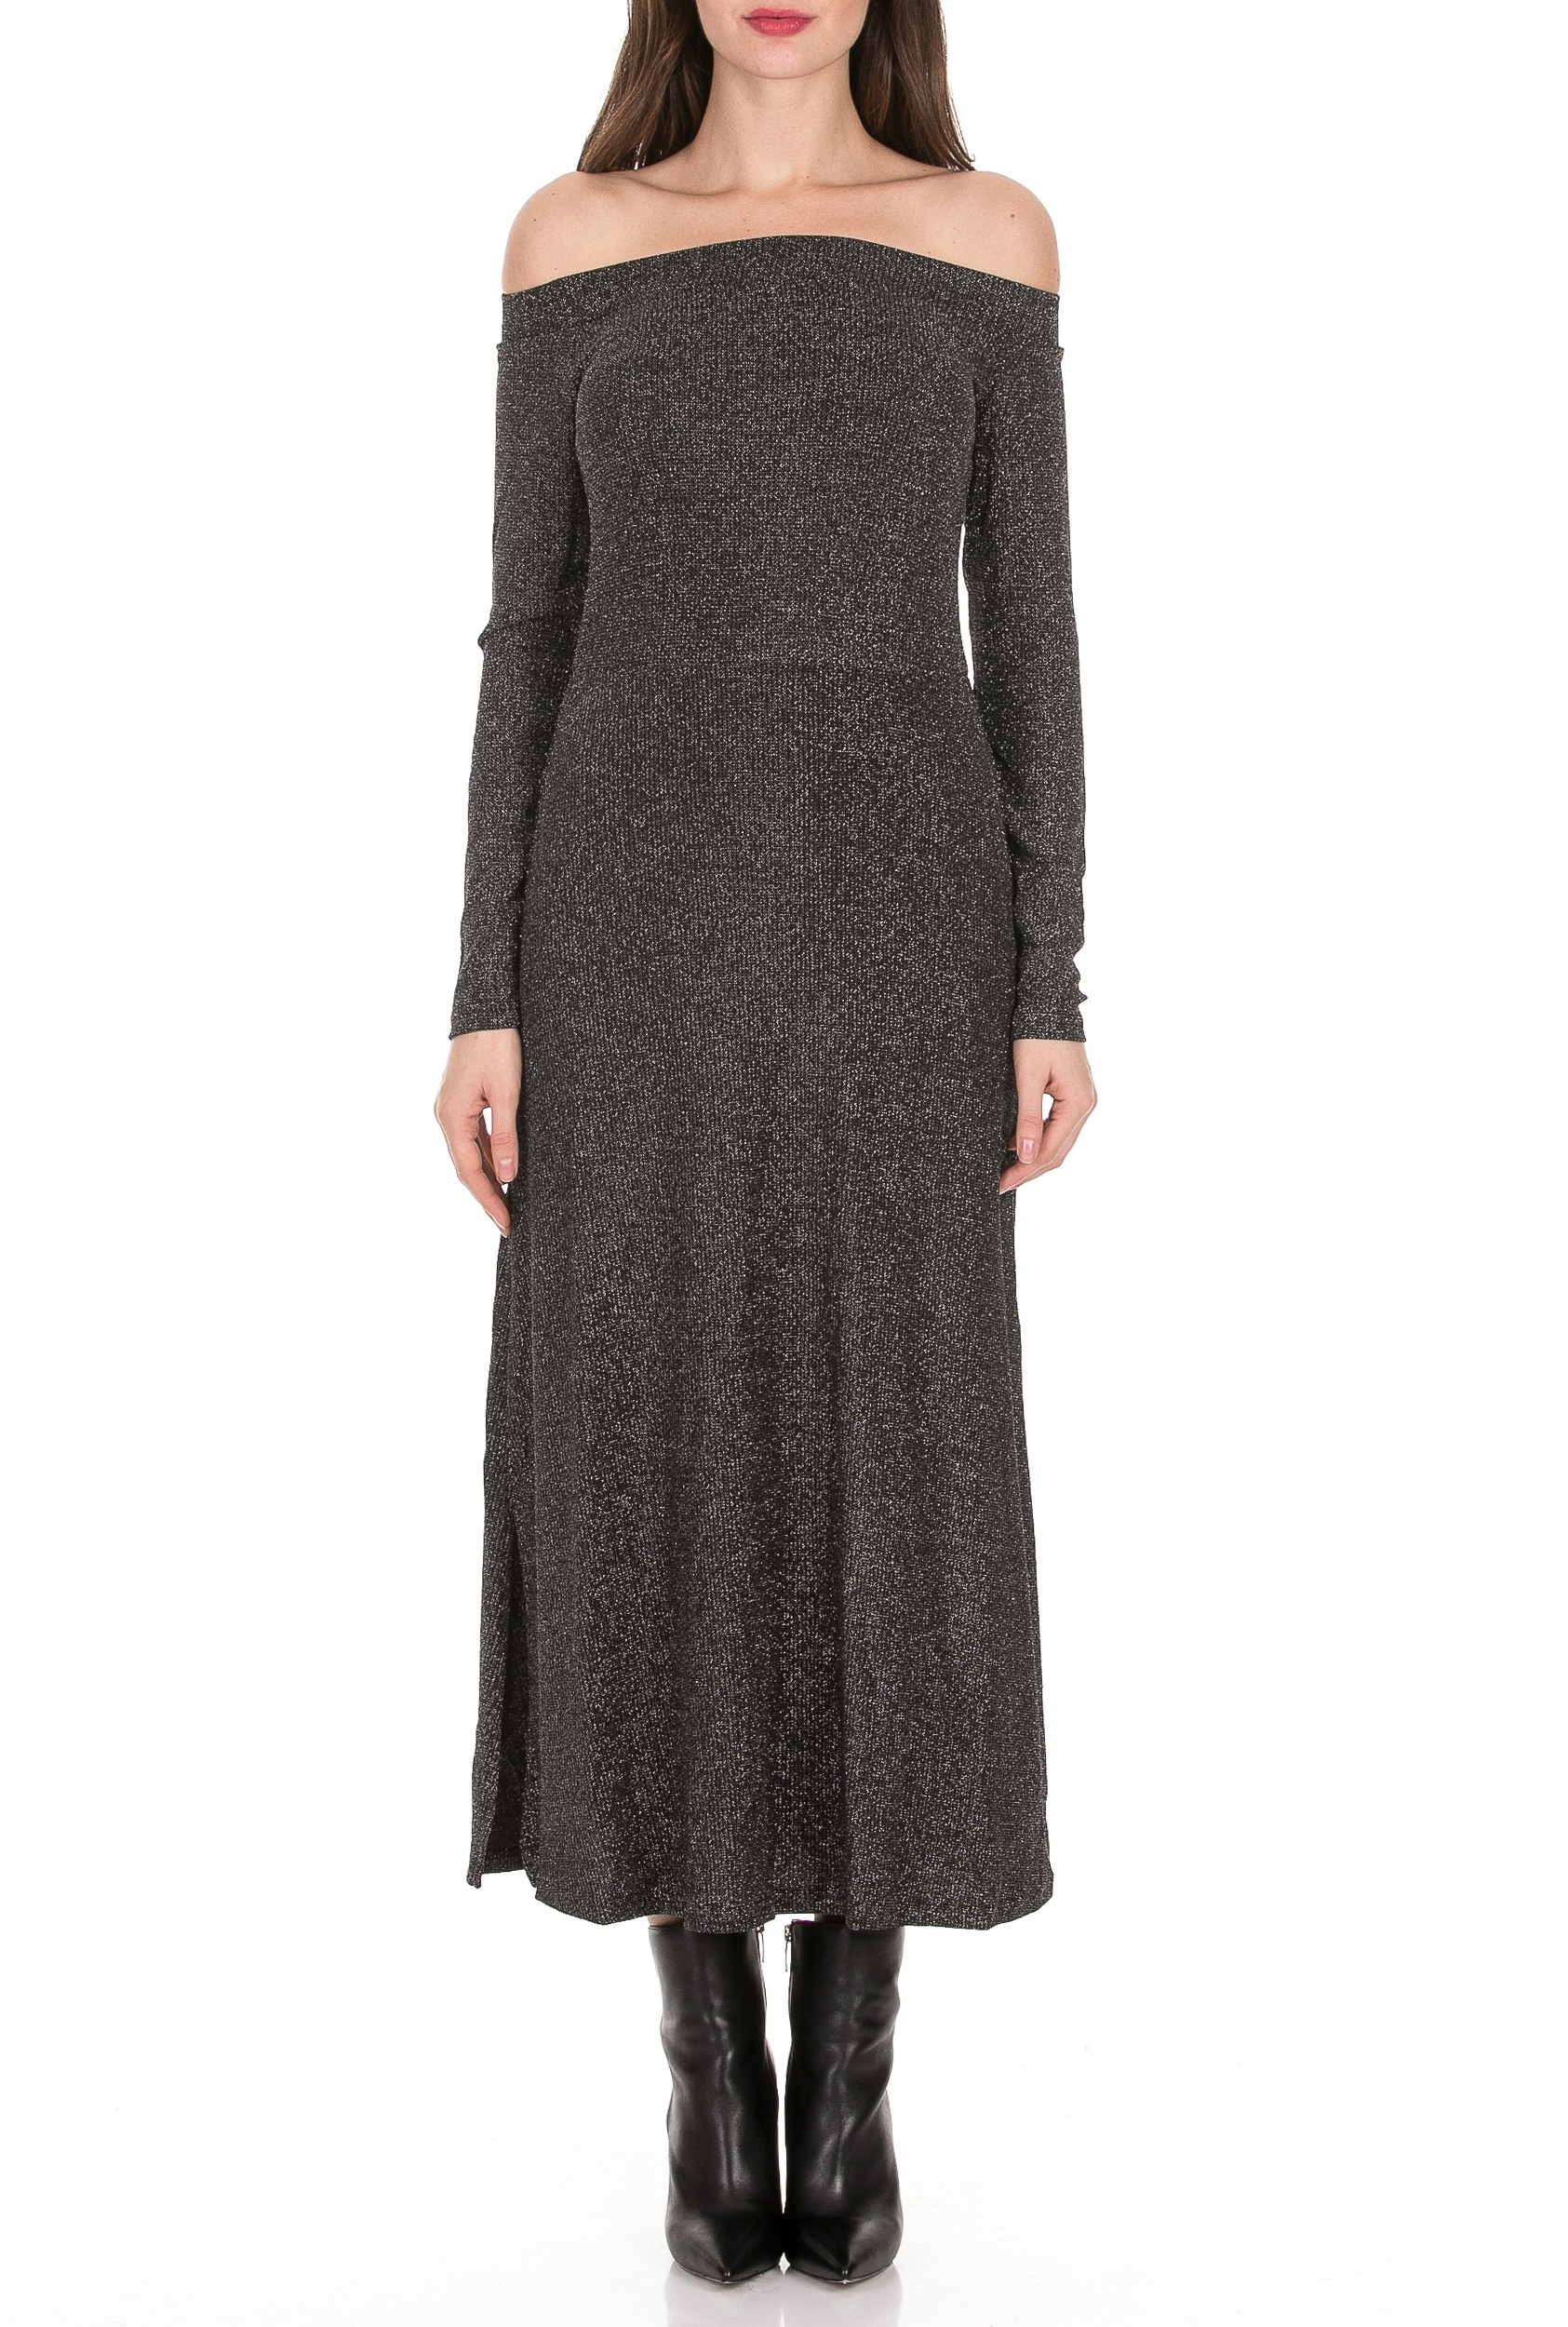 Γυναικεία/Ρούχα/Φορέματα/Μάξι RELIGION - Γυναικείο maxi φόρεμα RELIGION MODERN DRESS γκρι